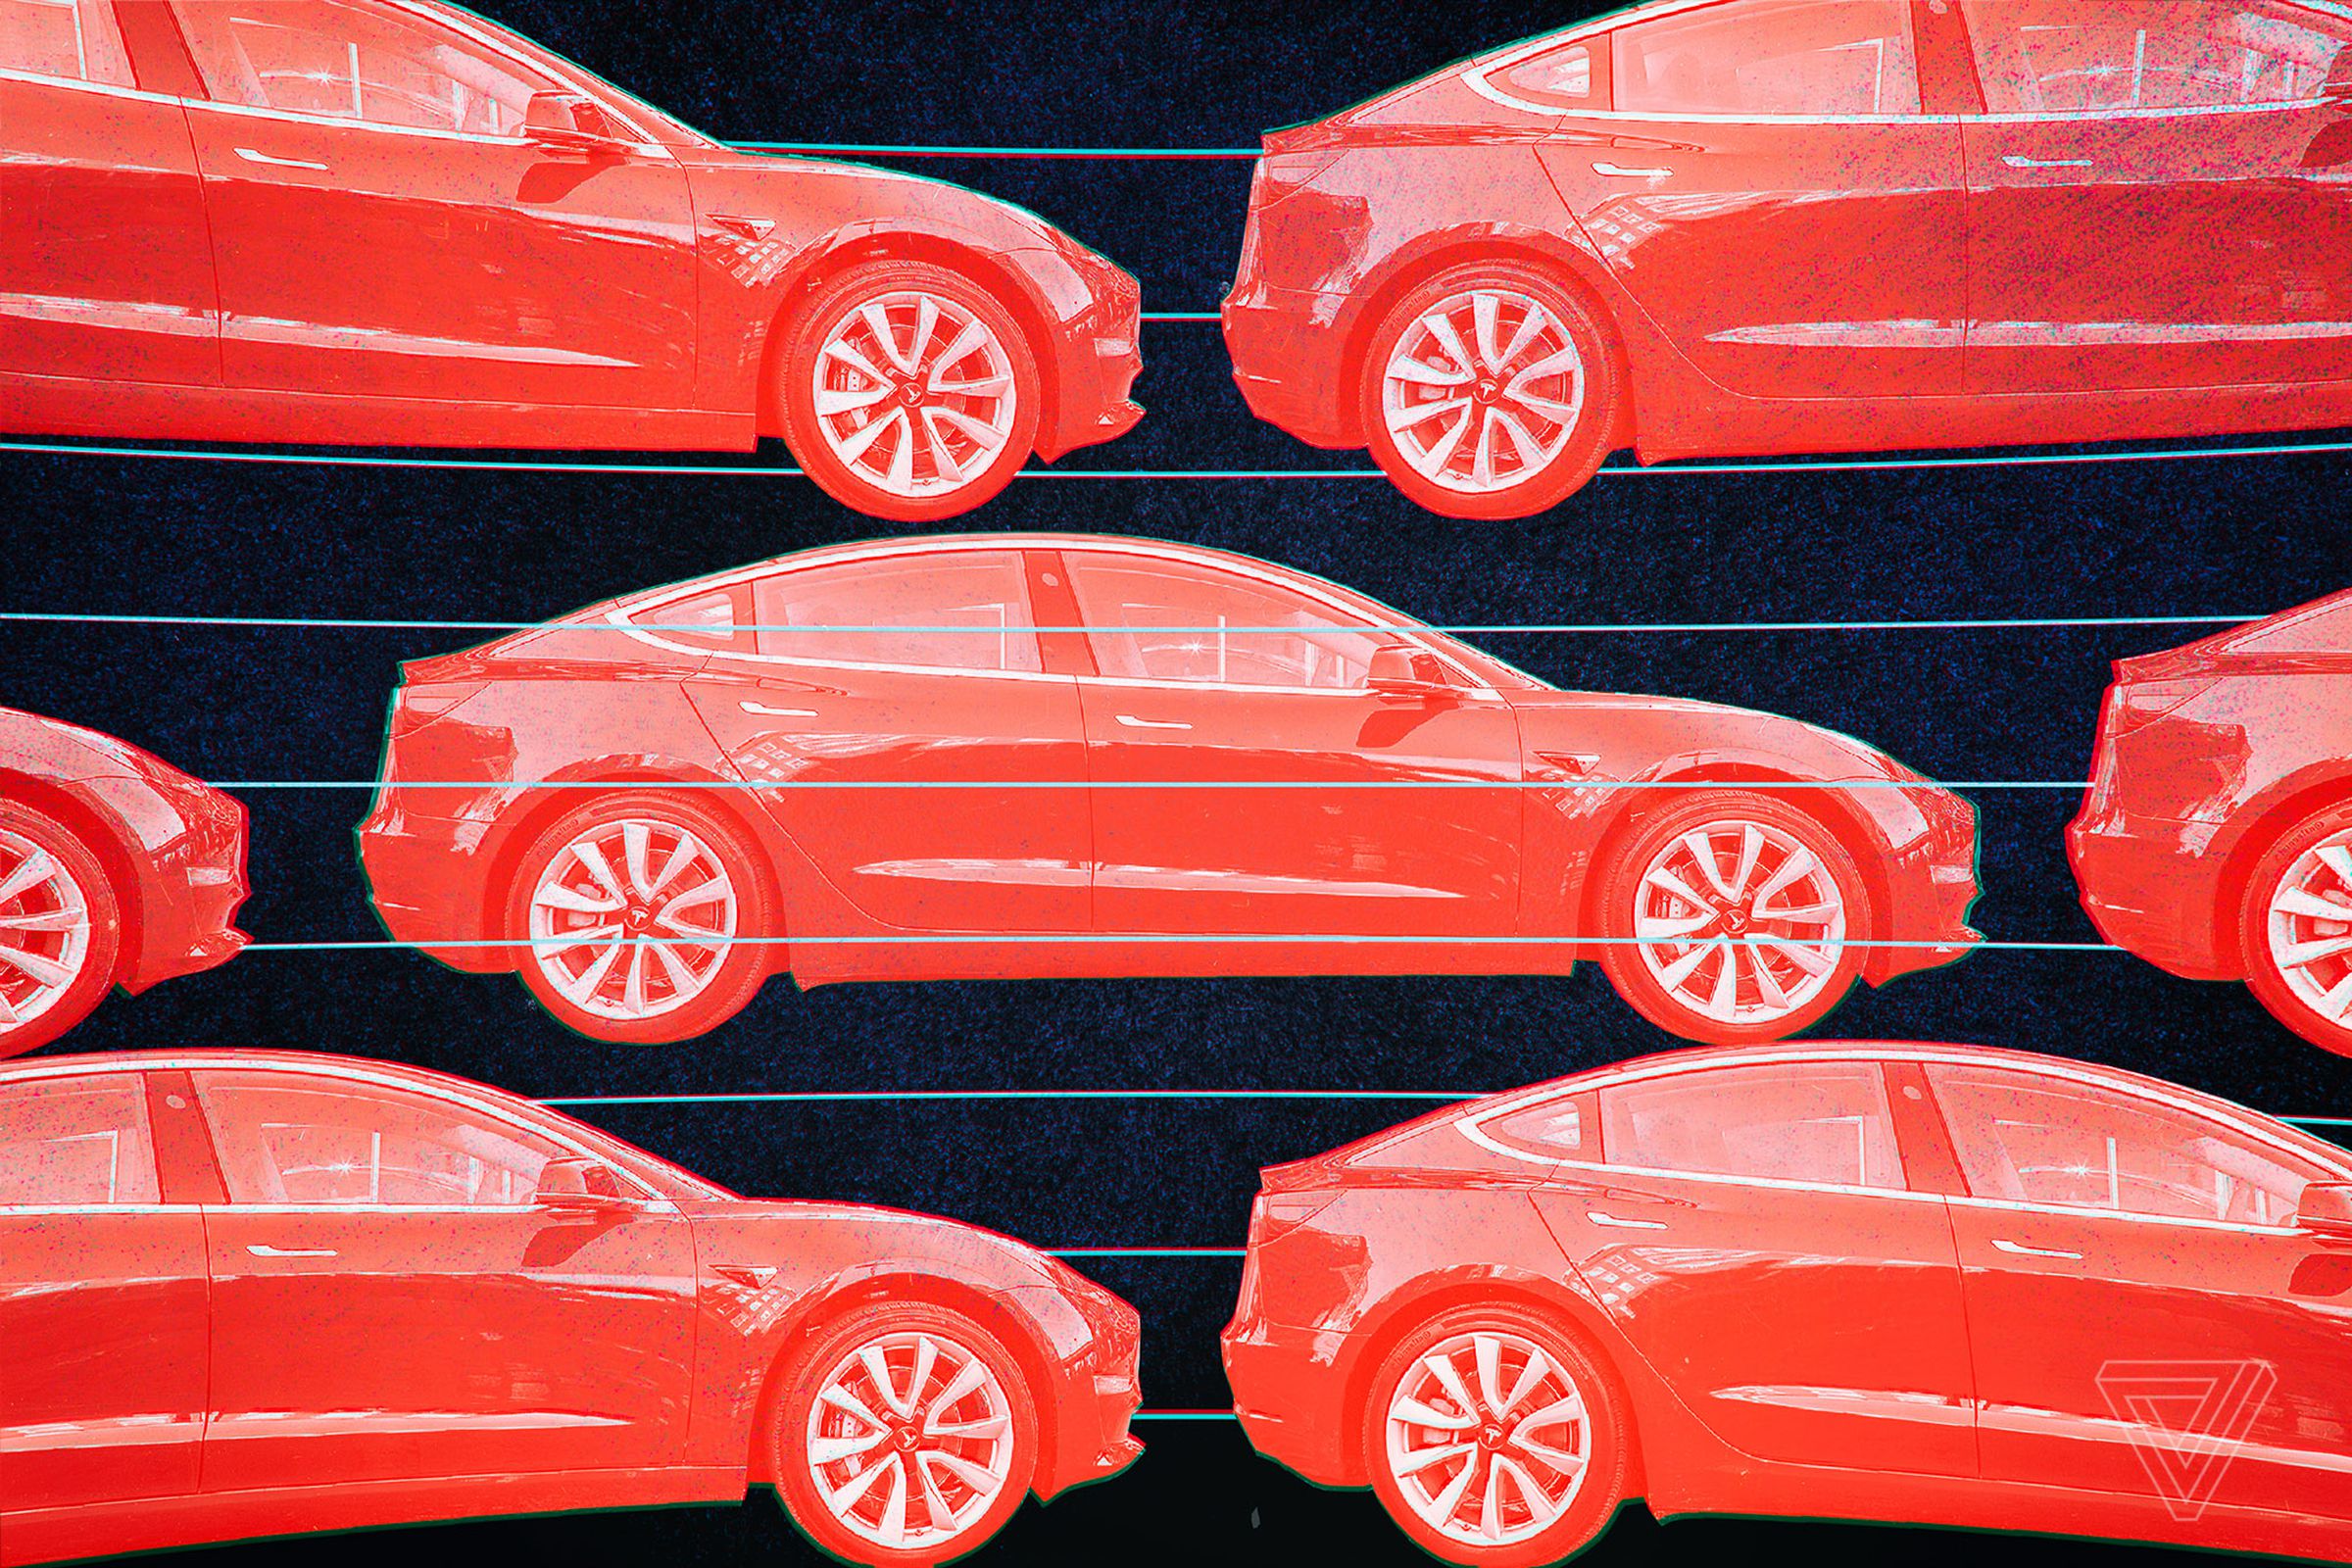 Illustration depicting multiple red Tesla sedans on a black background.